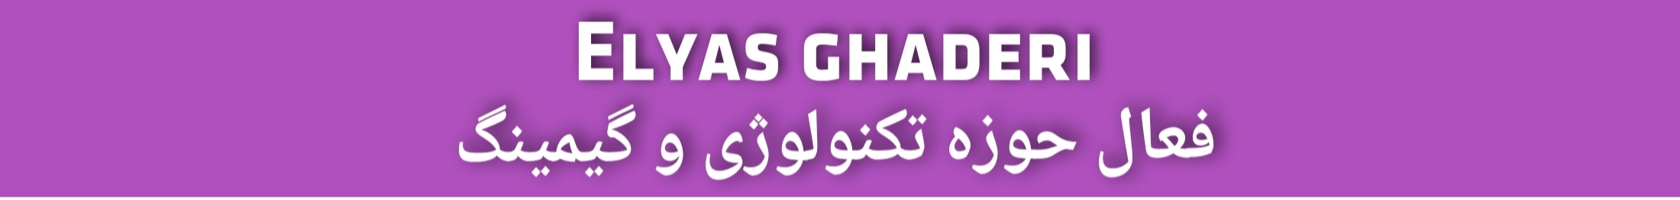  Elyas ghaderi | الیاس قادری